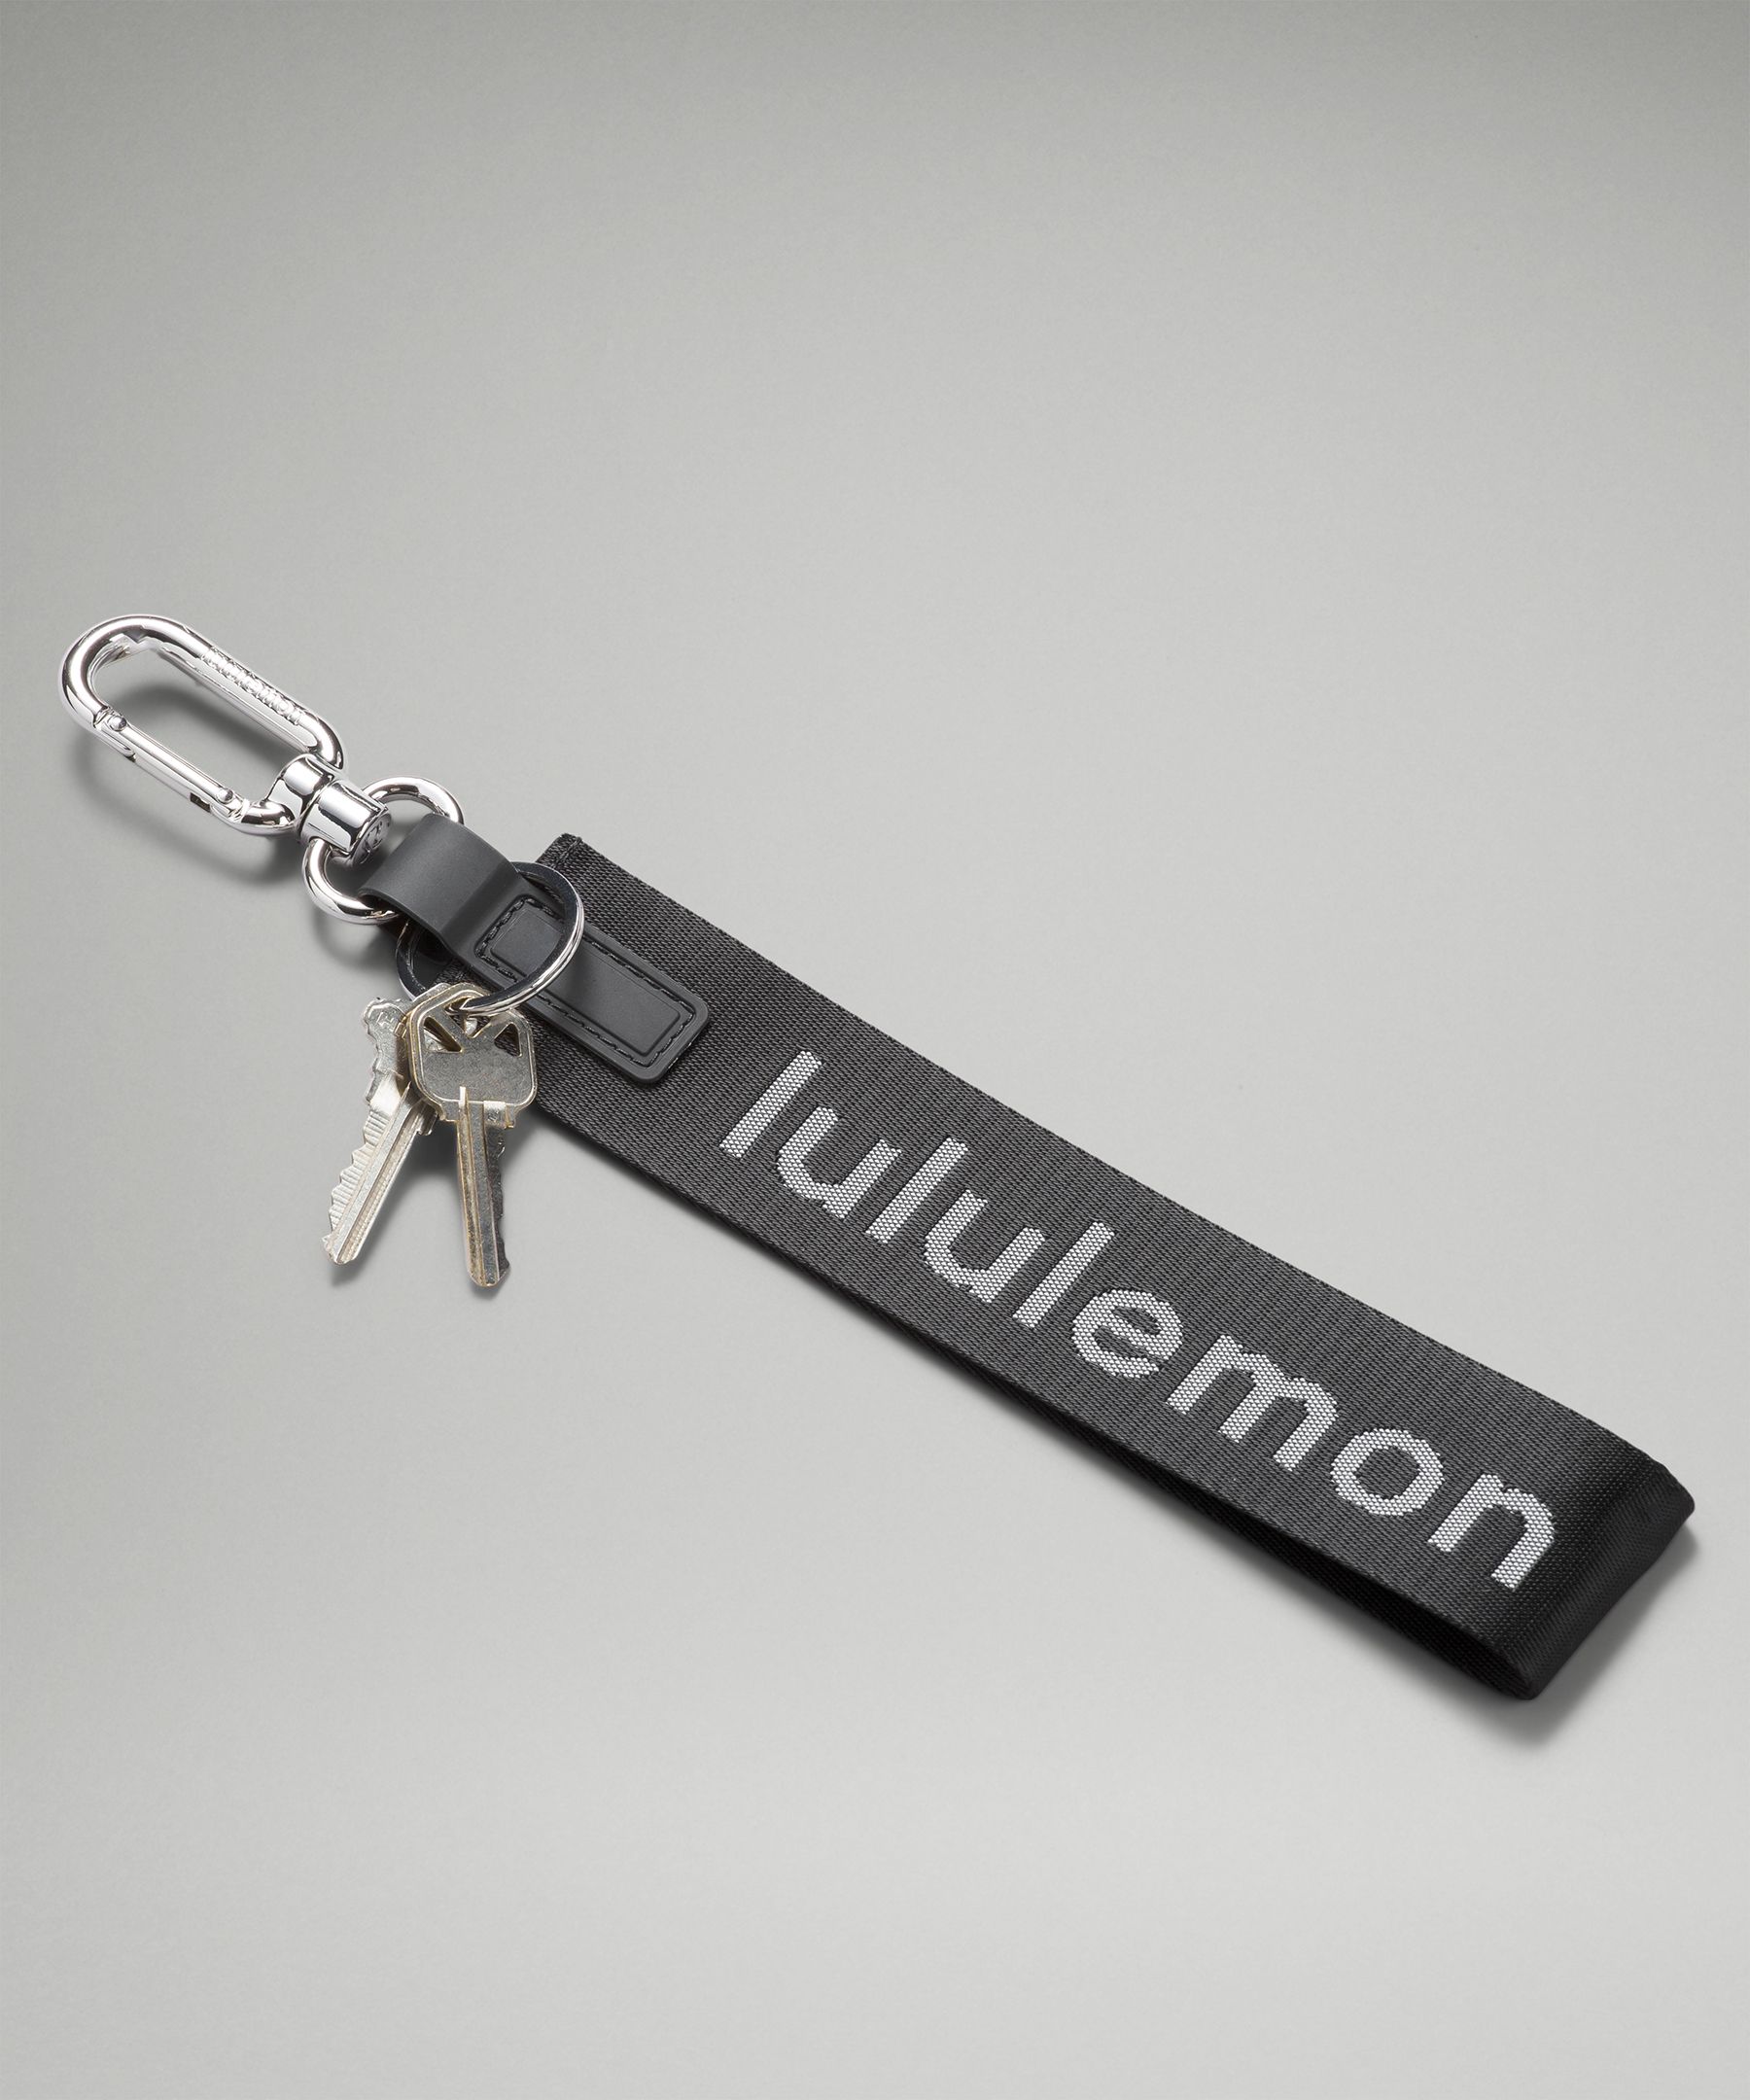 Lululemon Never Lost Keychain - Black